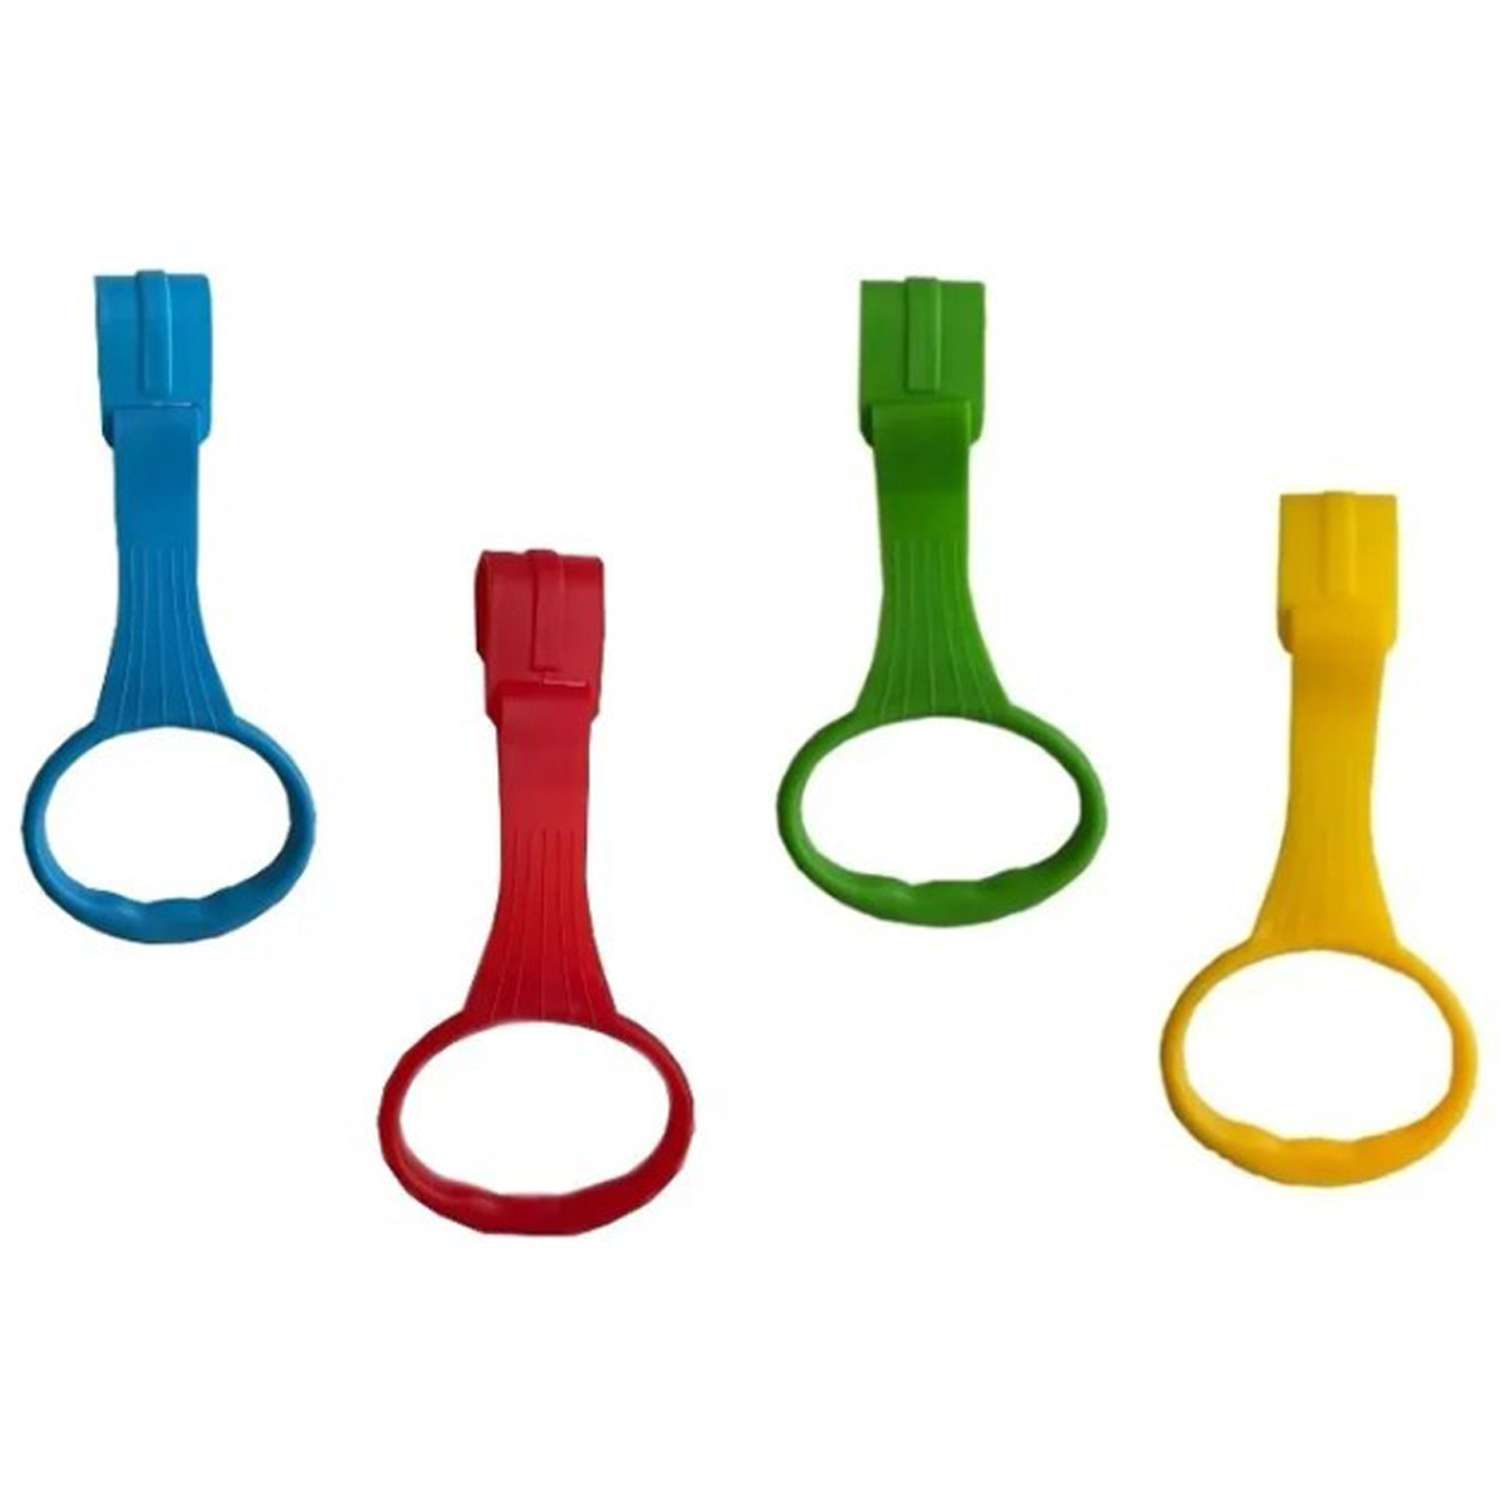 Пластиковые кольца Floopsi для манежа или барьера подвесные 2 шт kolso-4pc-blue+green+red+yellow - фото 1